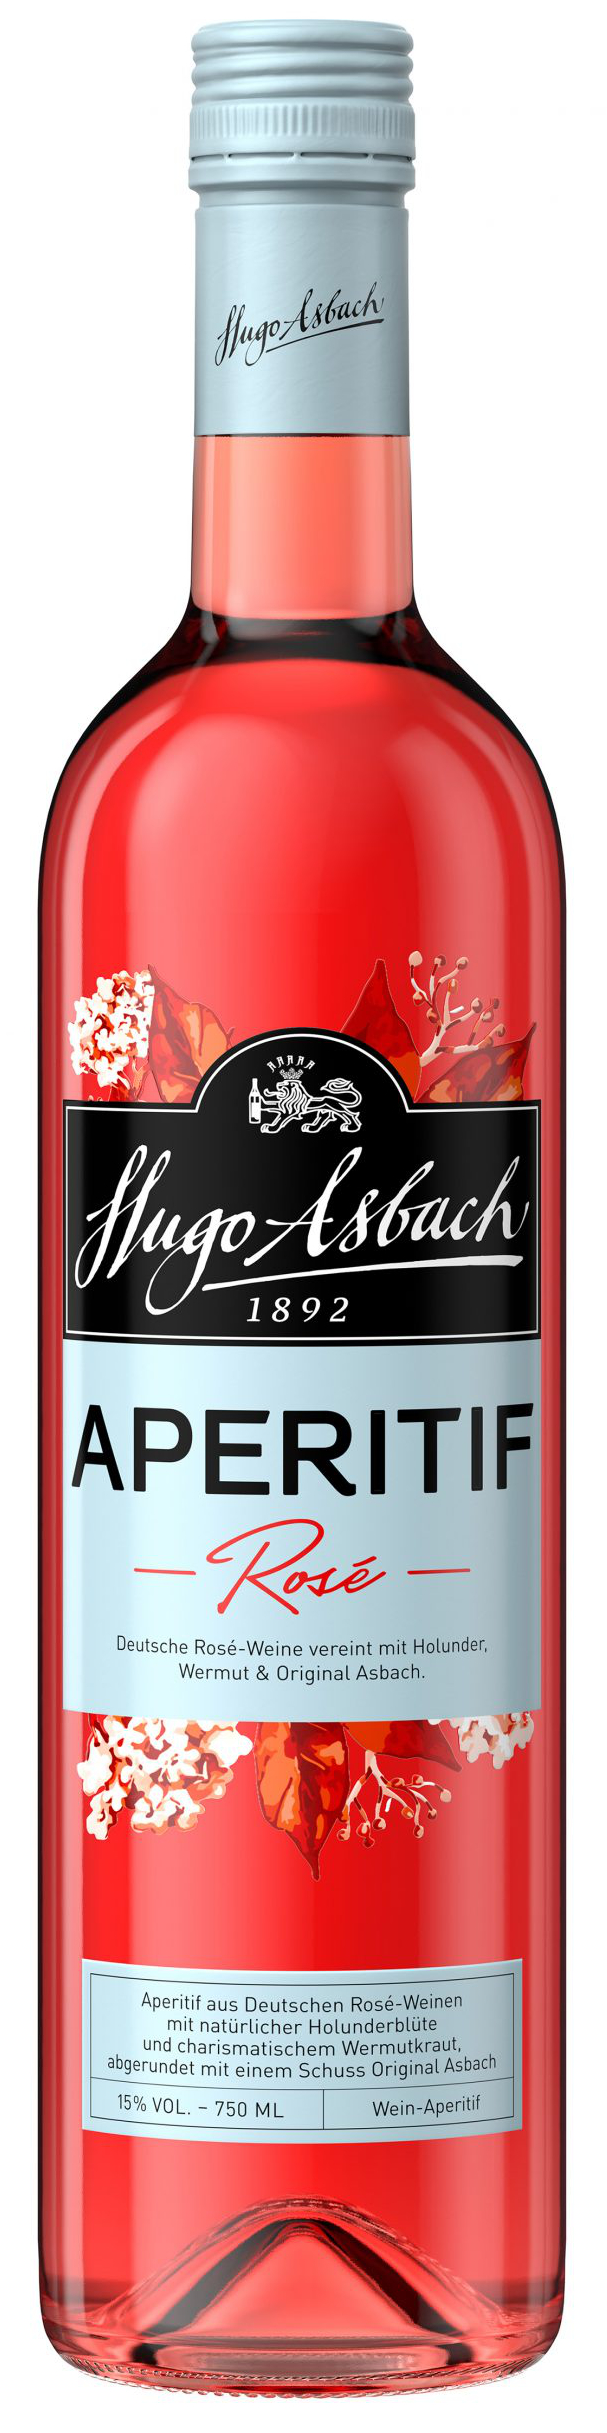 Asbach Aperitif Rose  15 % 0.7L